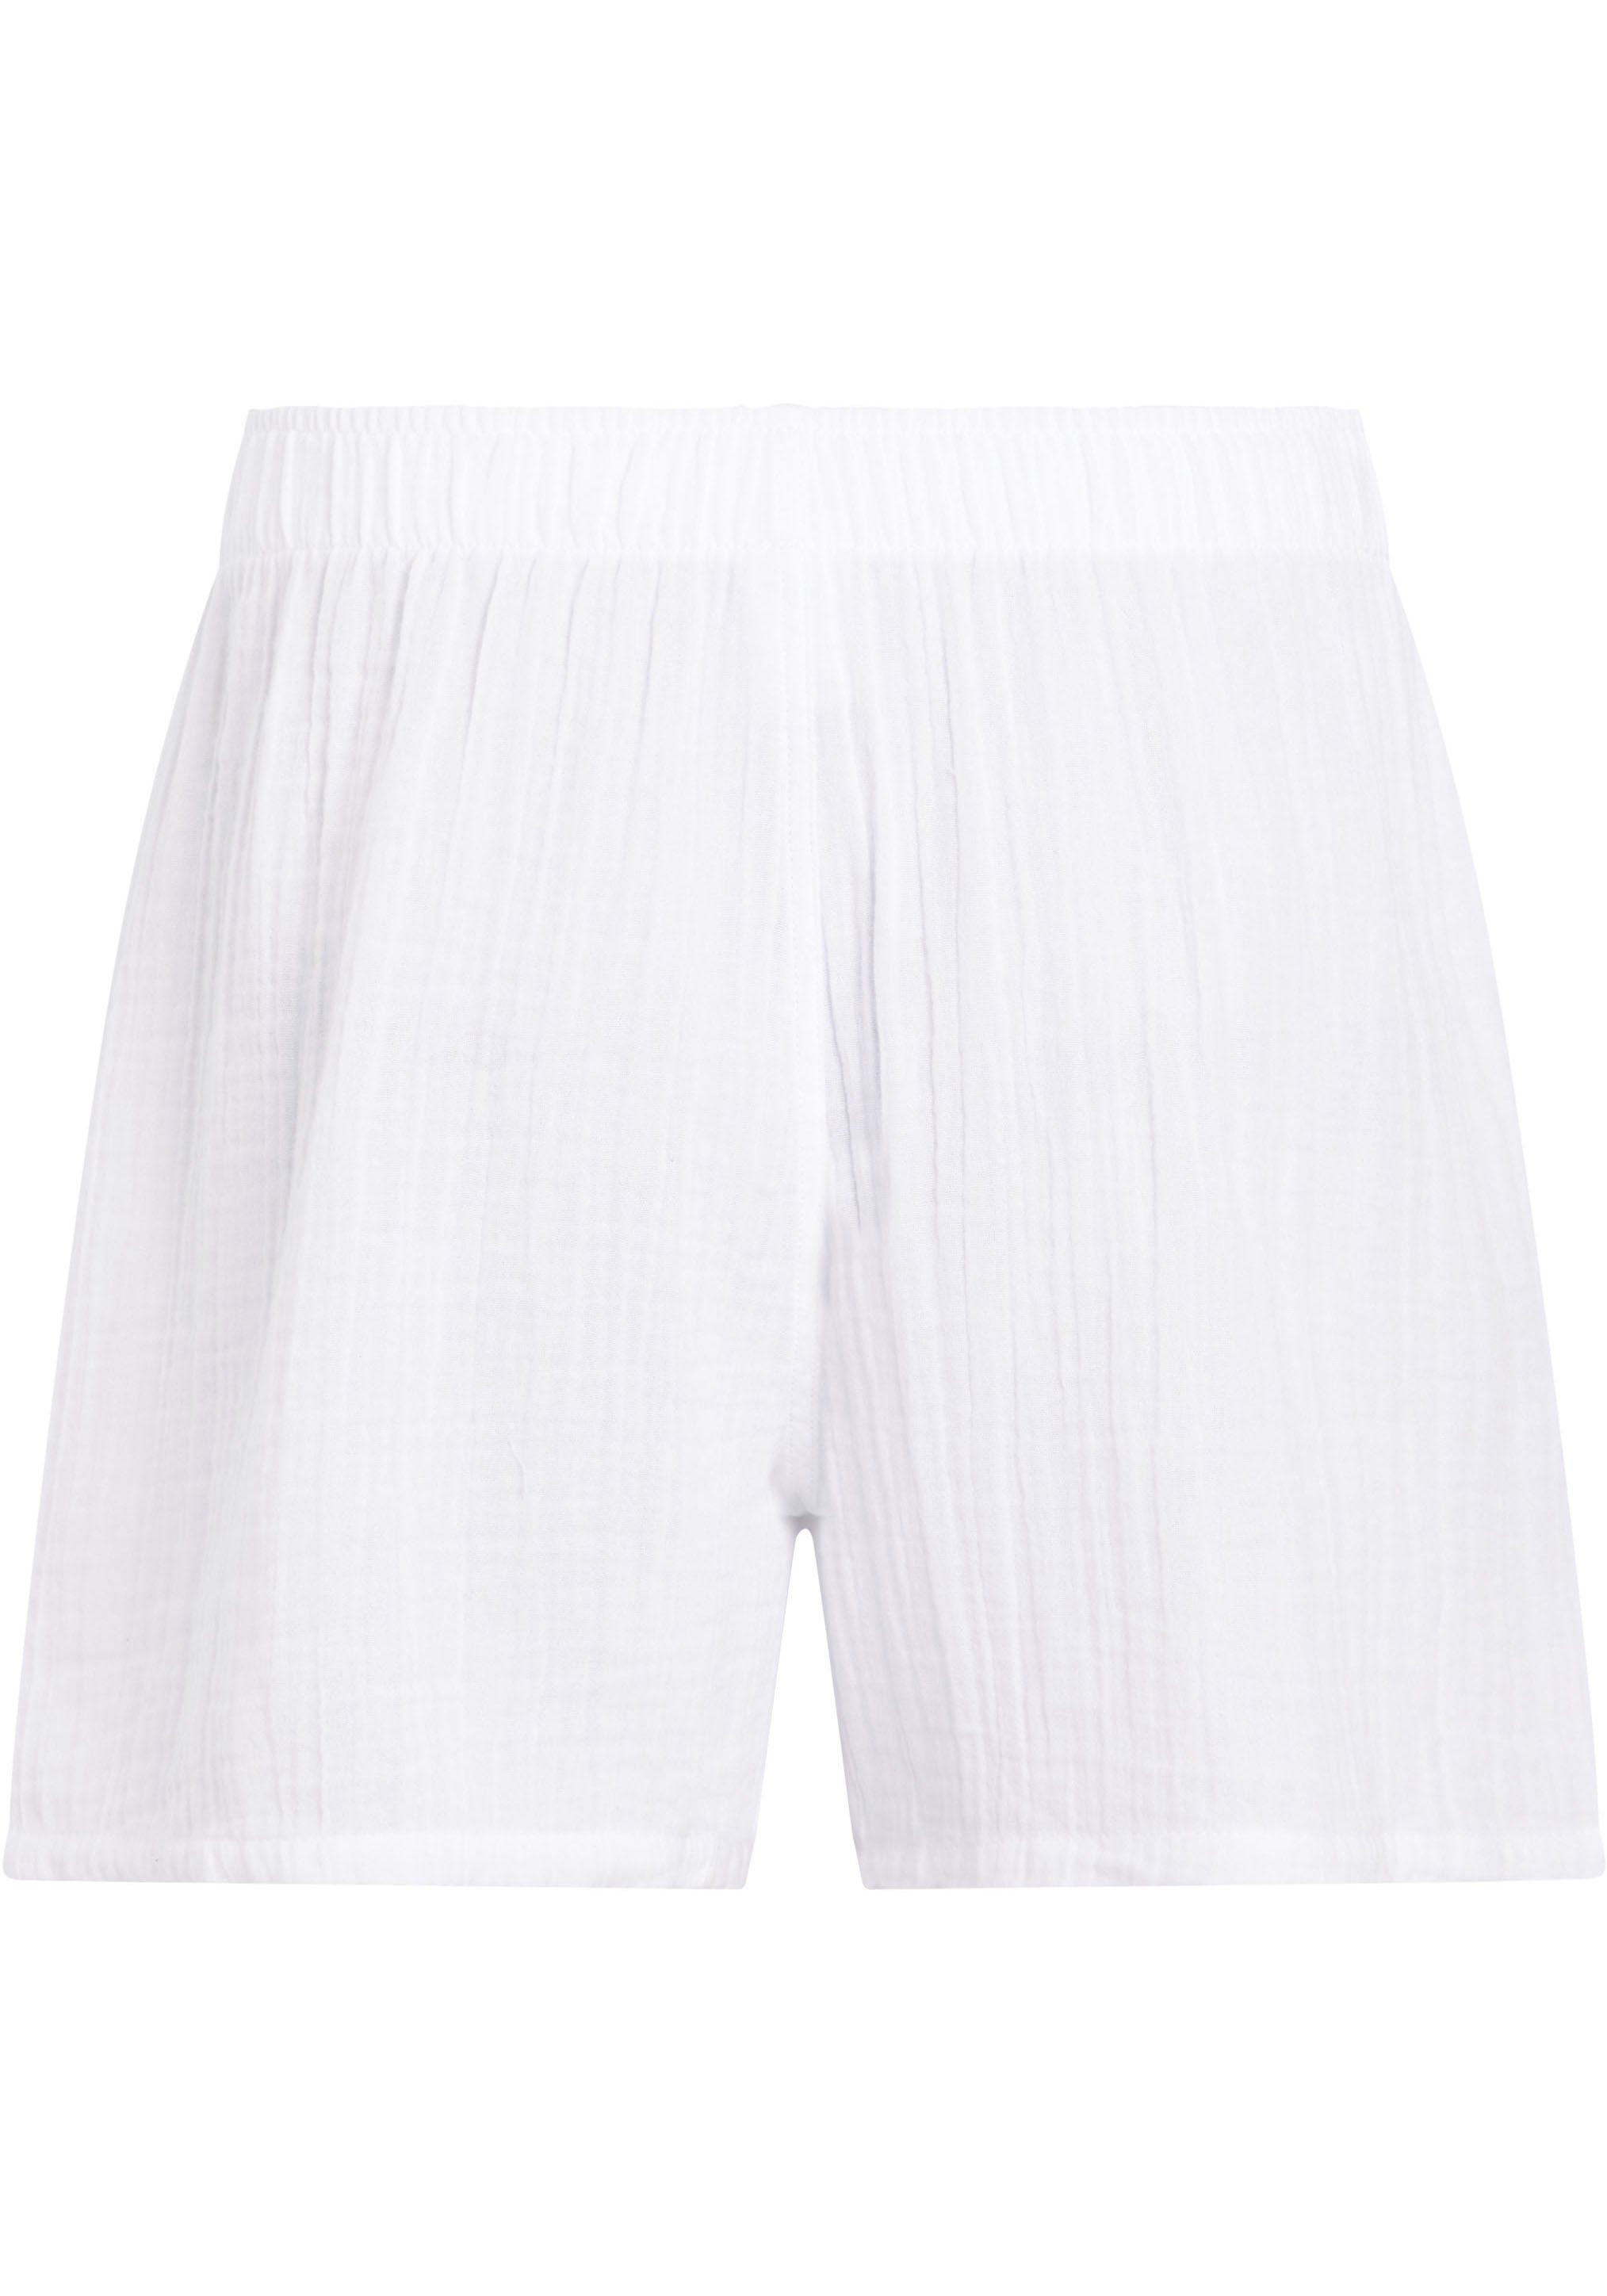 Calvin Klein Underwear Pyjamashorts BOXER SLIM mit Markenlabel auf dem  Bund, Bequeme Passform mit normaler Leibhöhe